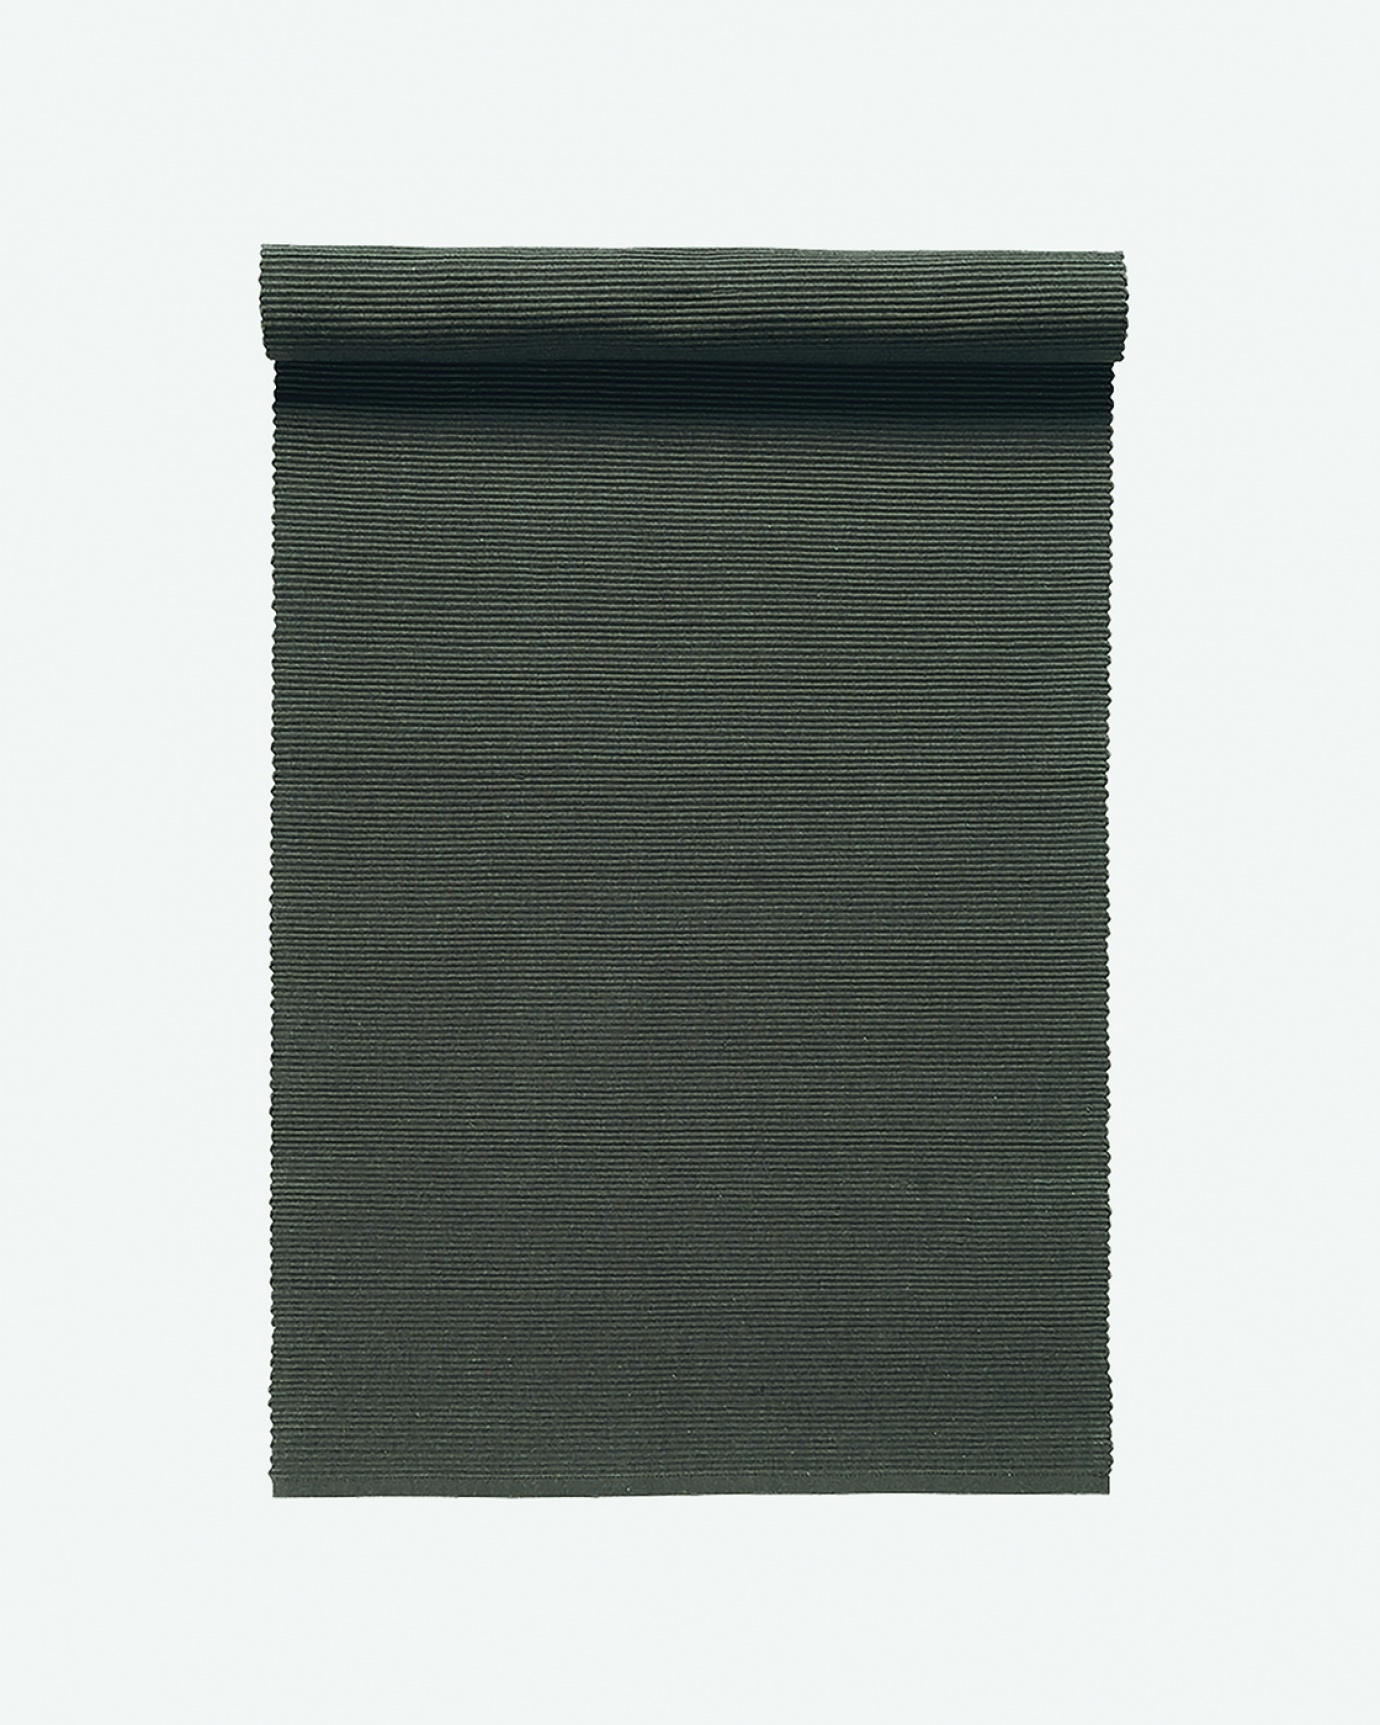 Image du produit chemin de table UNI buffalo marron en coton doux de qualité côtelée de LINUM DESIGN. Taille 45 x 150 cm.